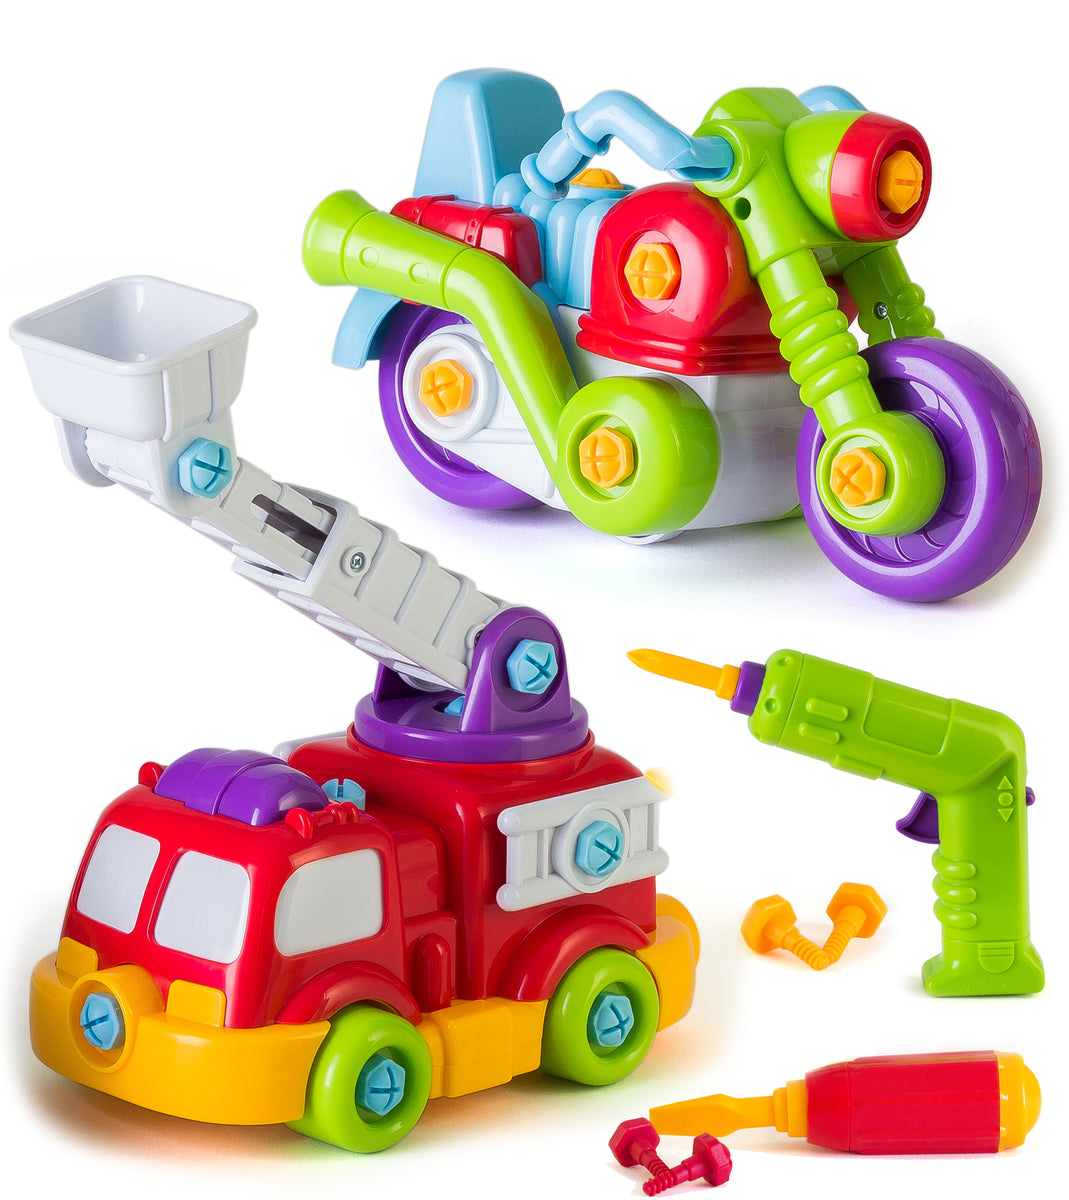 jcb toy tool set